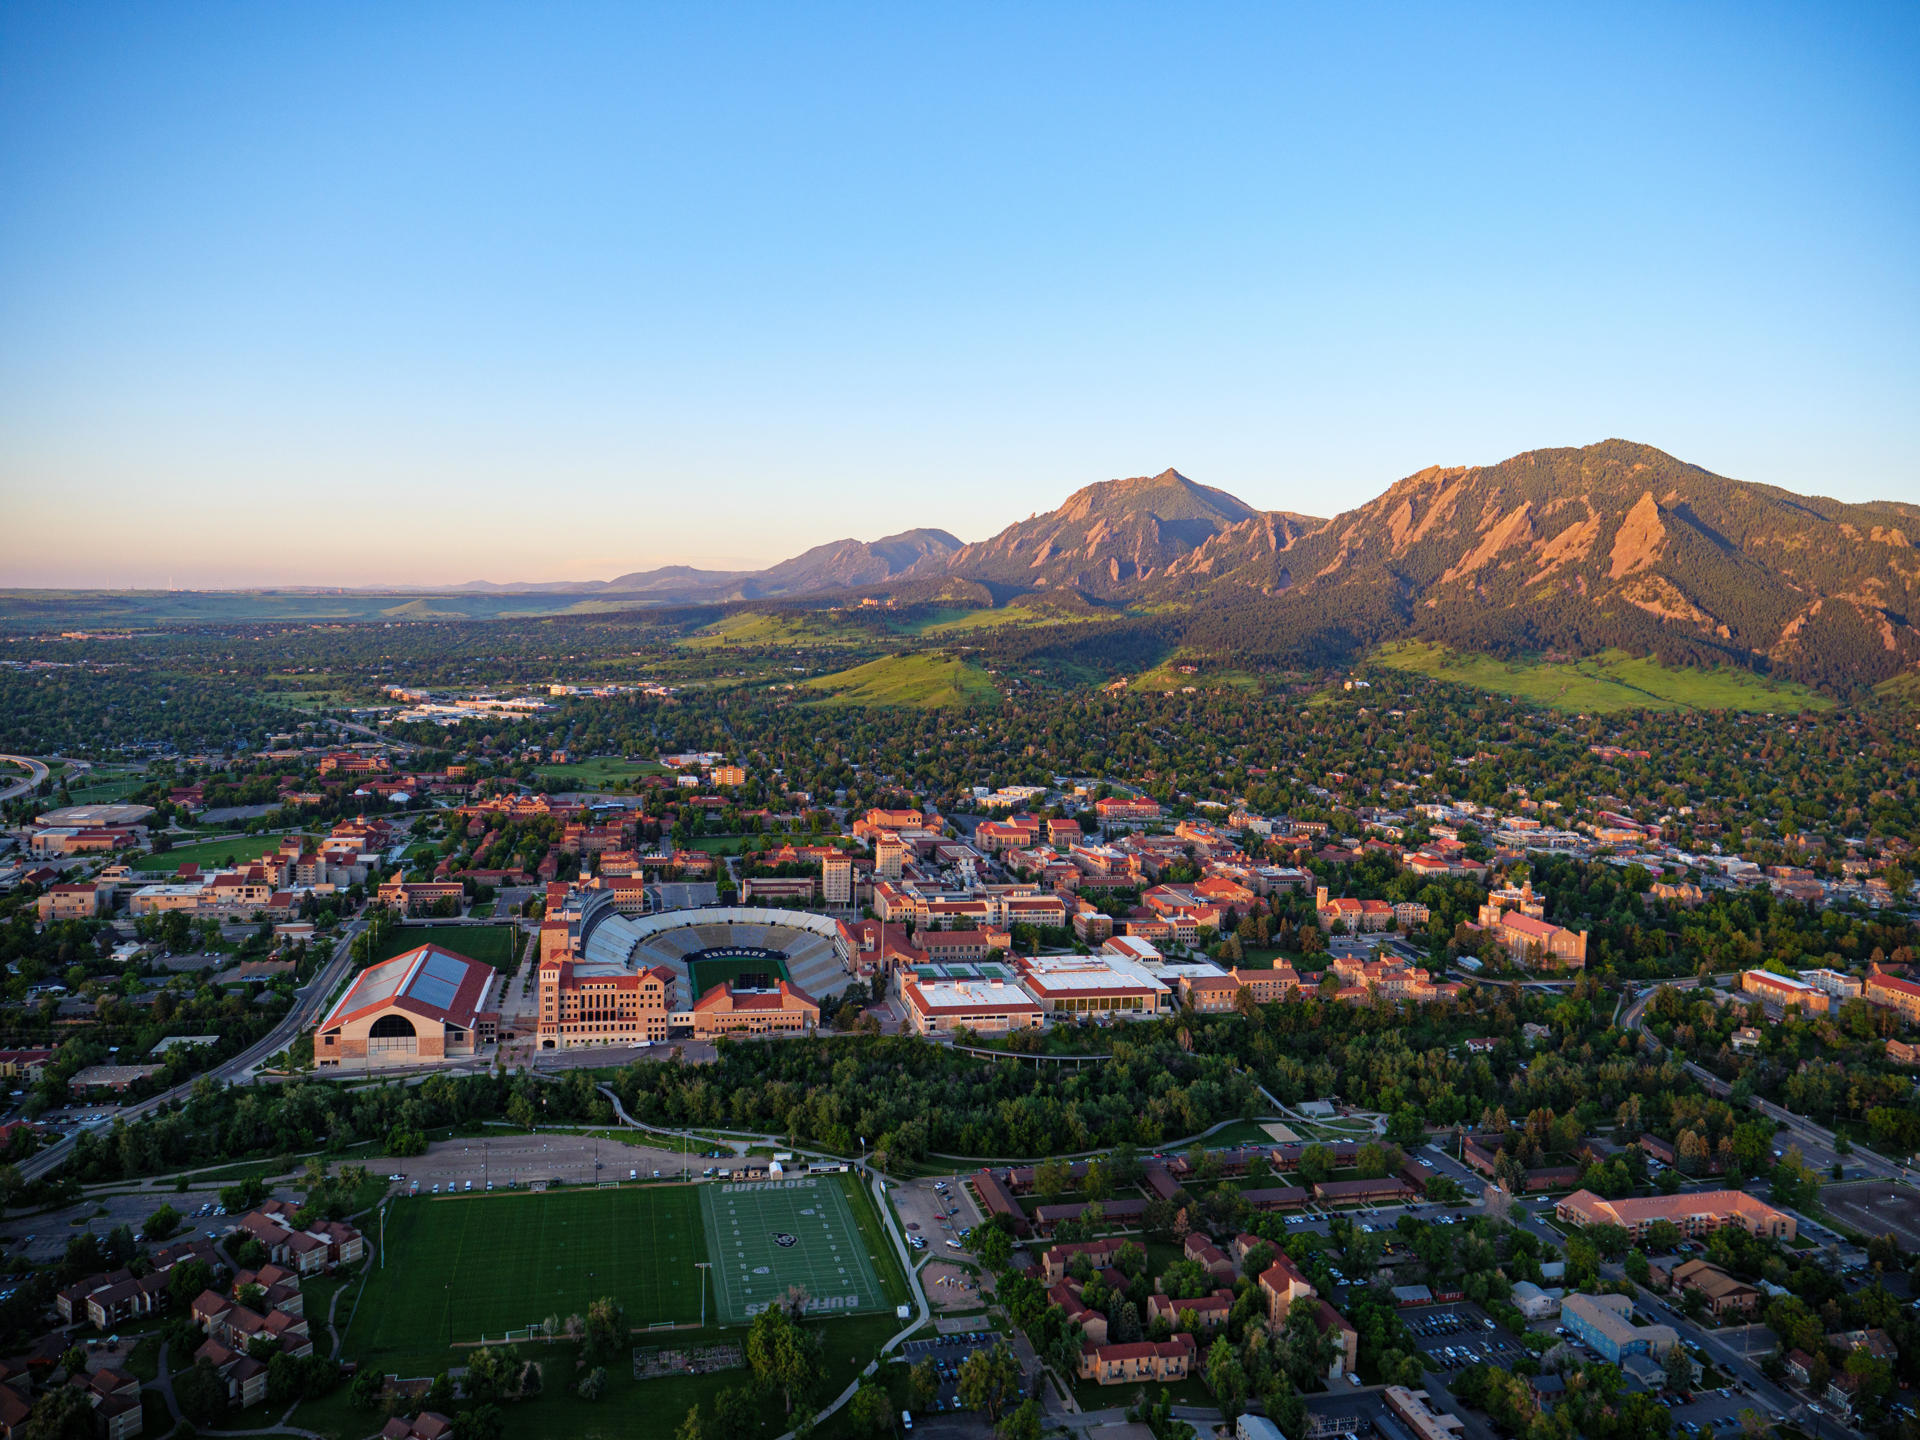 Fotografía de 2021 cedida por la Universidad de Colorado donde se muestra una vista aérea de la ciudad de Boulder y el campus de la universidad en el centro. EFE/Glenn J. Asakawa/Universidad de Colorado /SOLO USO EDITORIAL/NO VENTAS/SOLO DISPONIBLE PARA ILUSTRAR LA NOTICIA QUE ACOMPAÑA/CRÉDITO OBLIGATORIO
